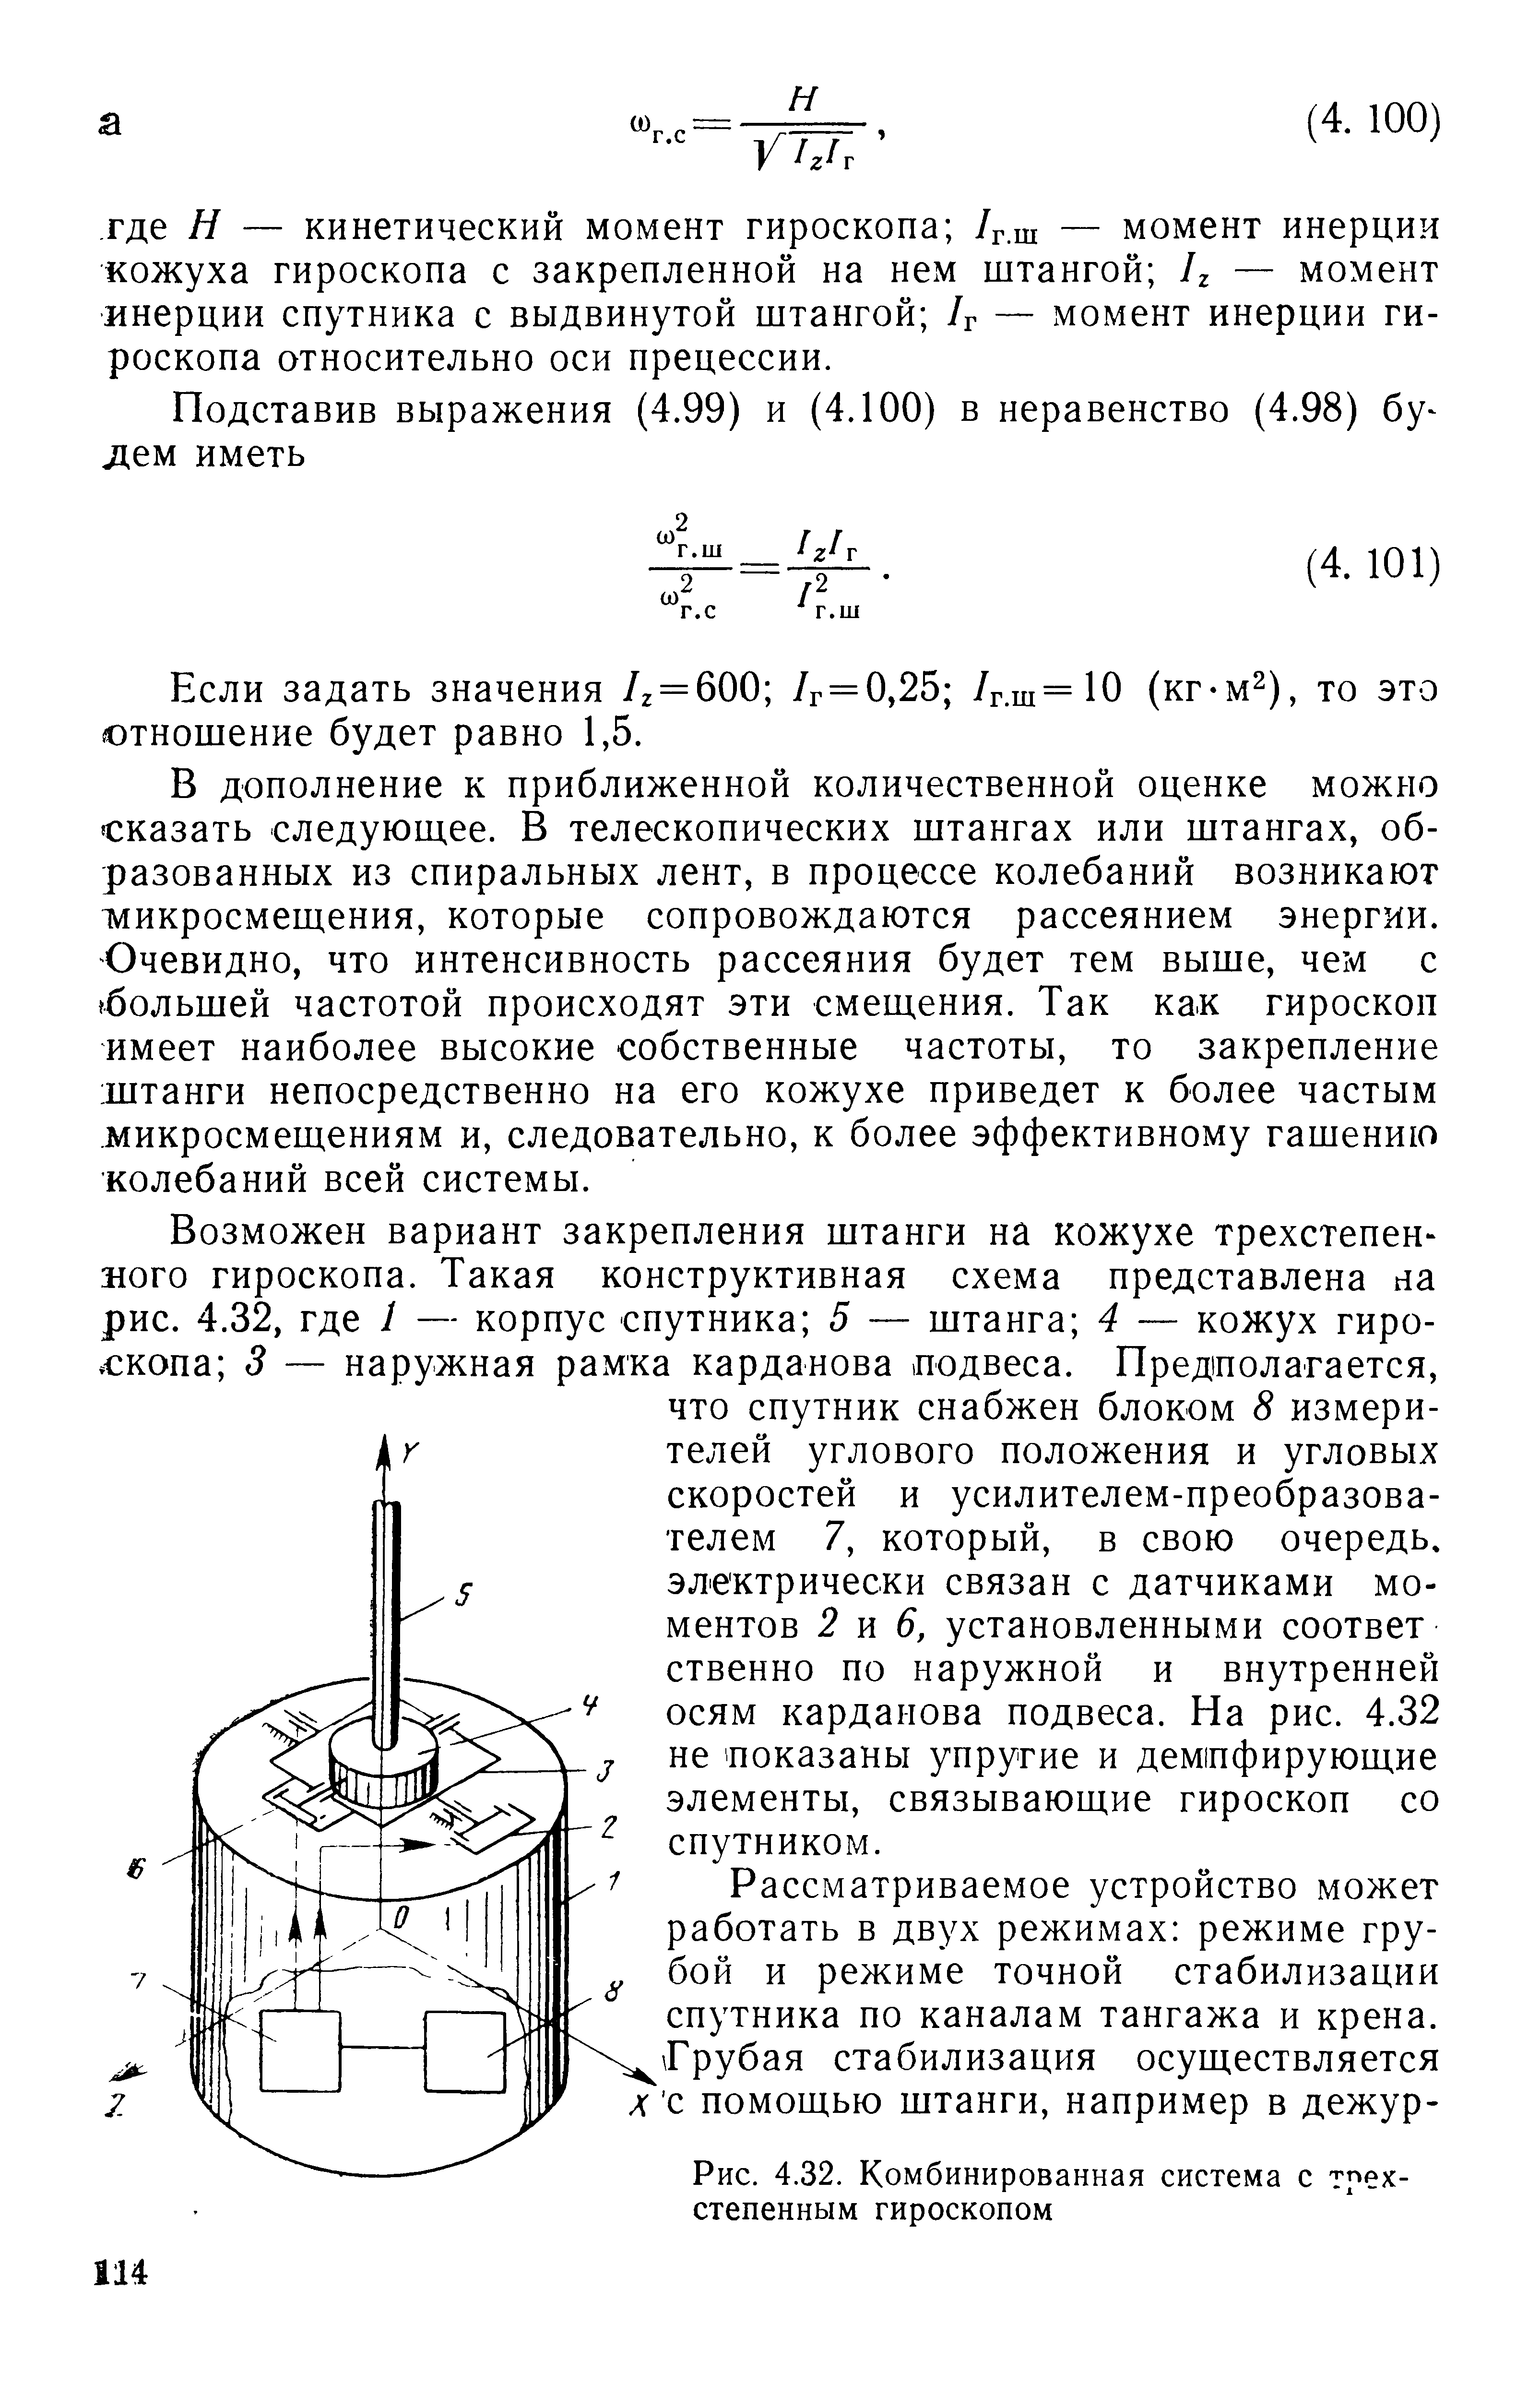 Рис. 4.32. Комбинированная система с трехстепенным гироскопом
